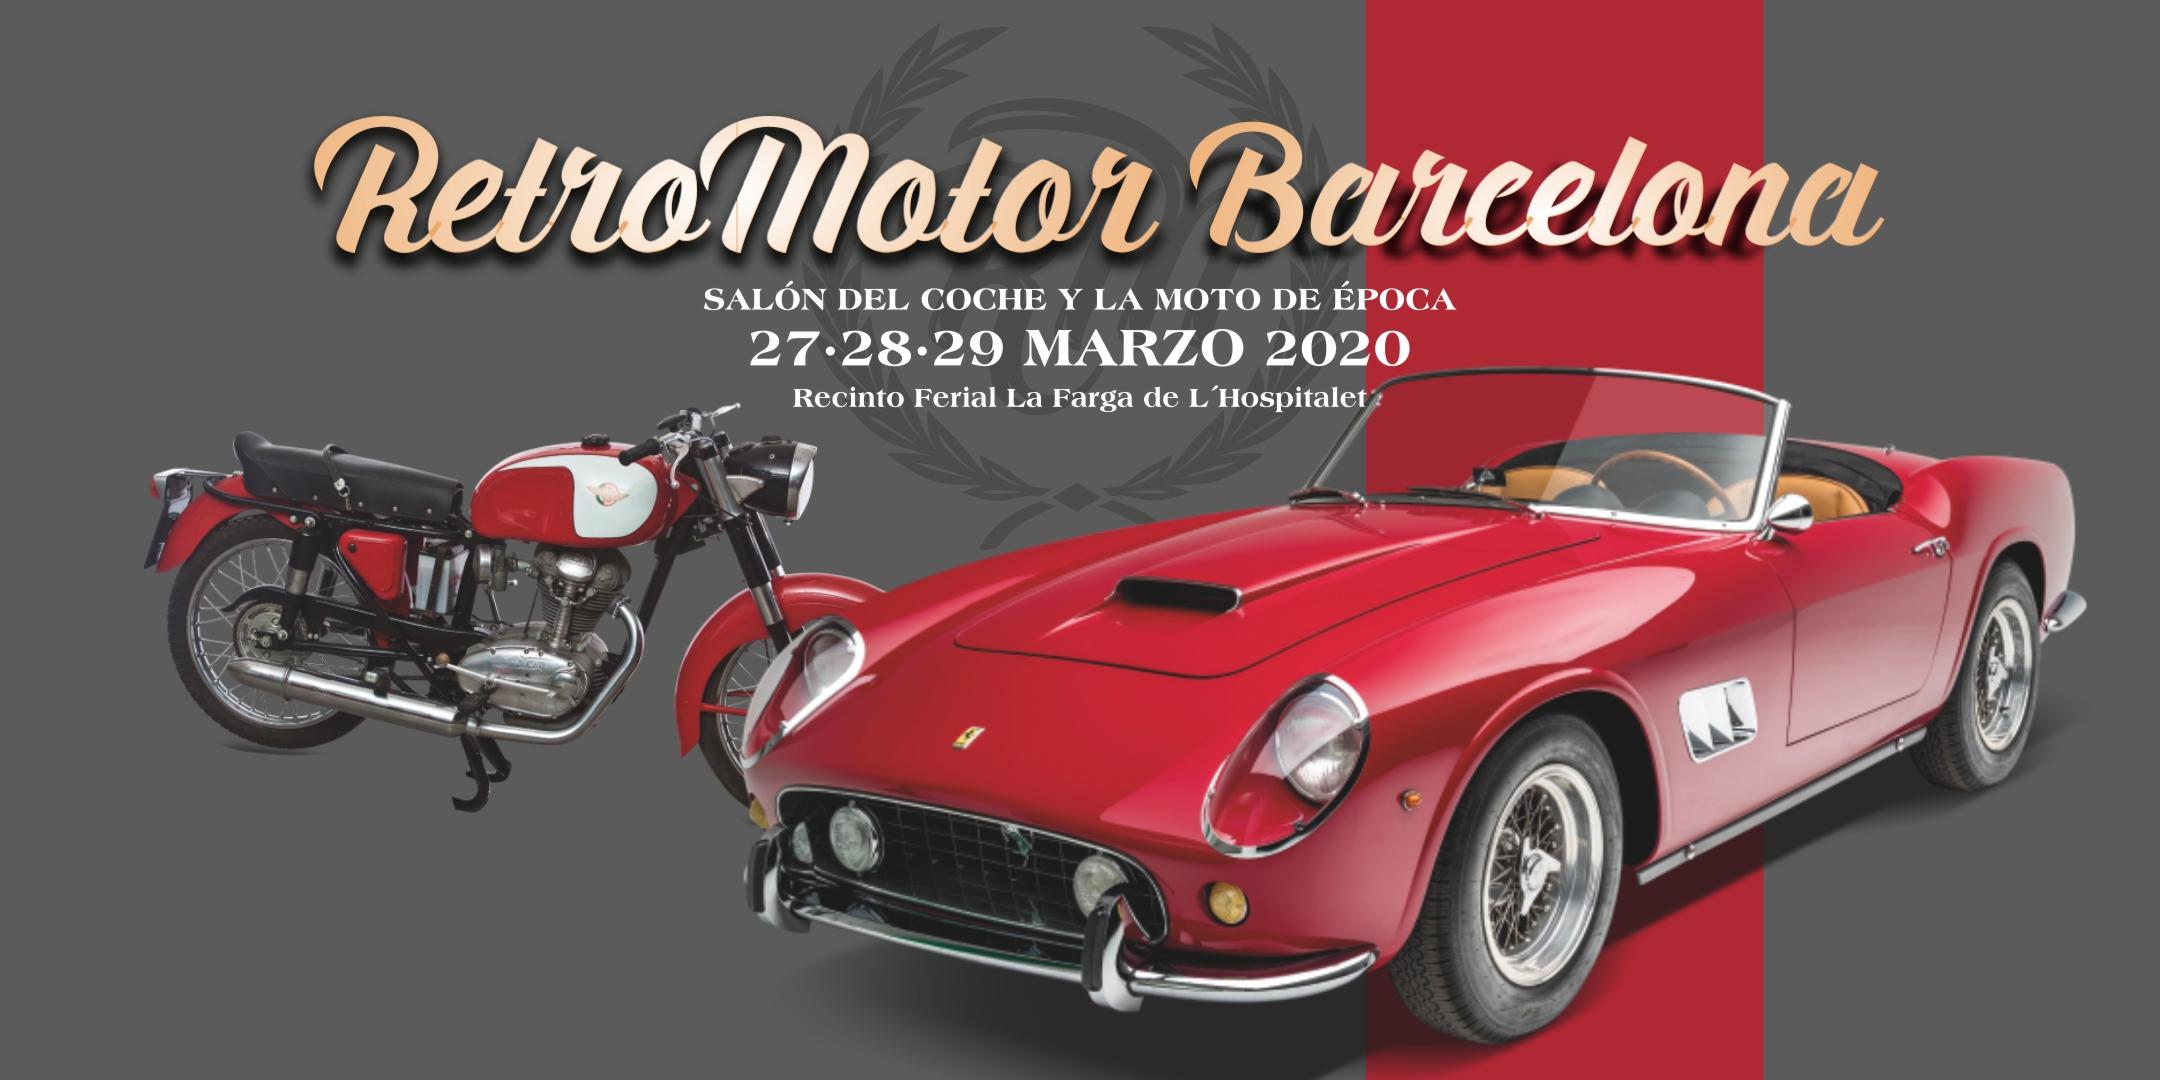 Retromotor Barcelona 2020, salón del coche y la moto de época